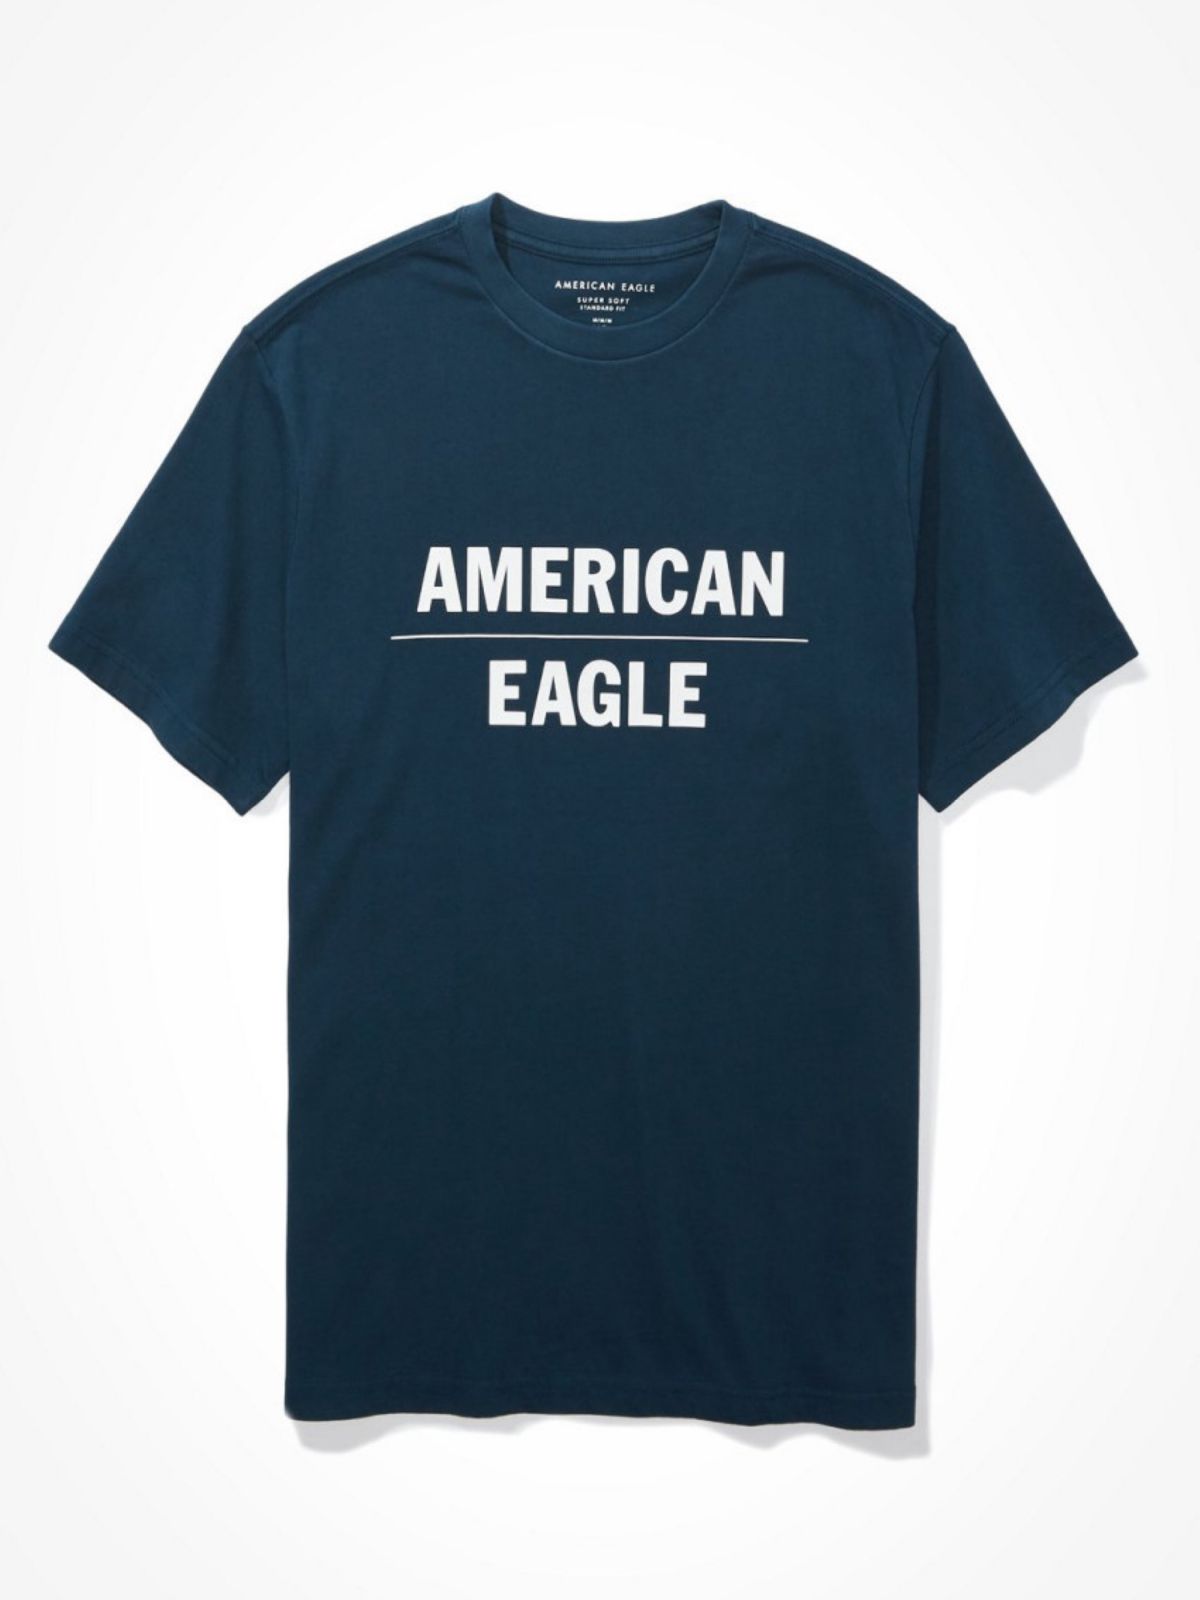  טי שירט עם לוגו של AMERICAN EAGLE